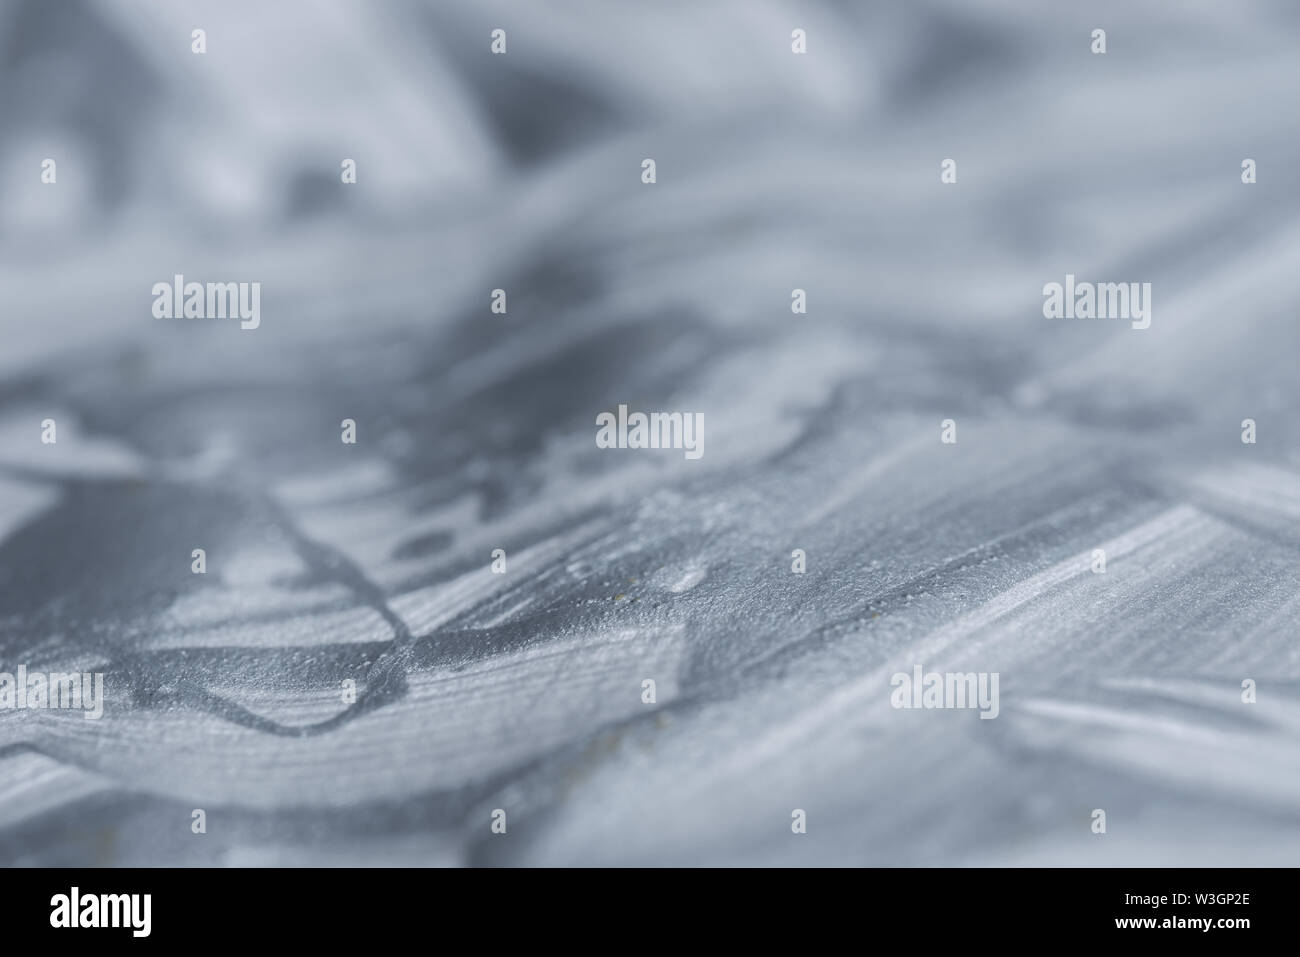 Farbe: Silber lackiert bacground Textur selektiven Fokus Stockfoto